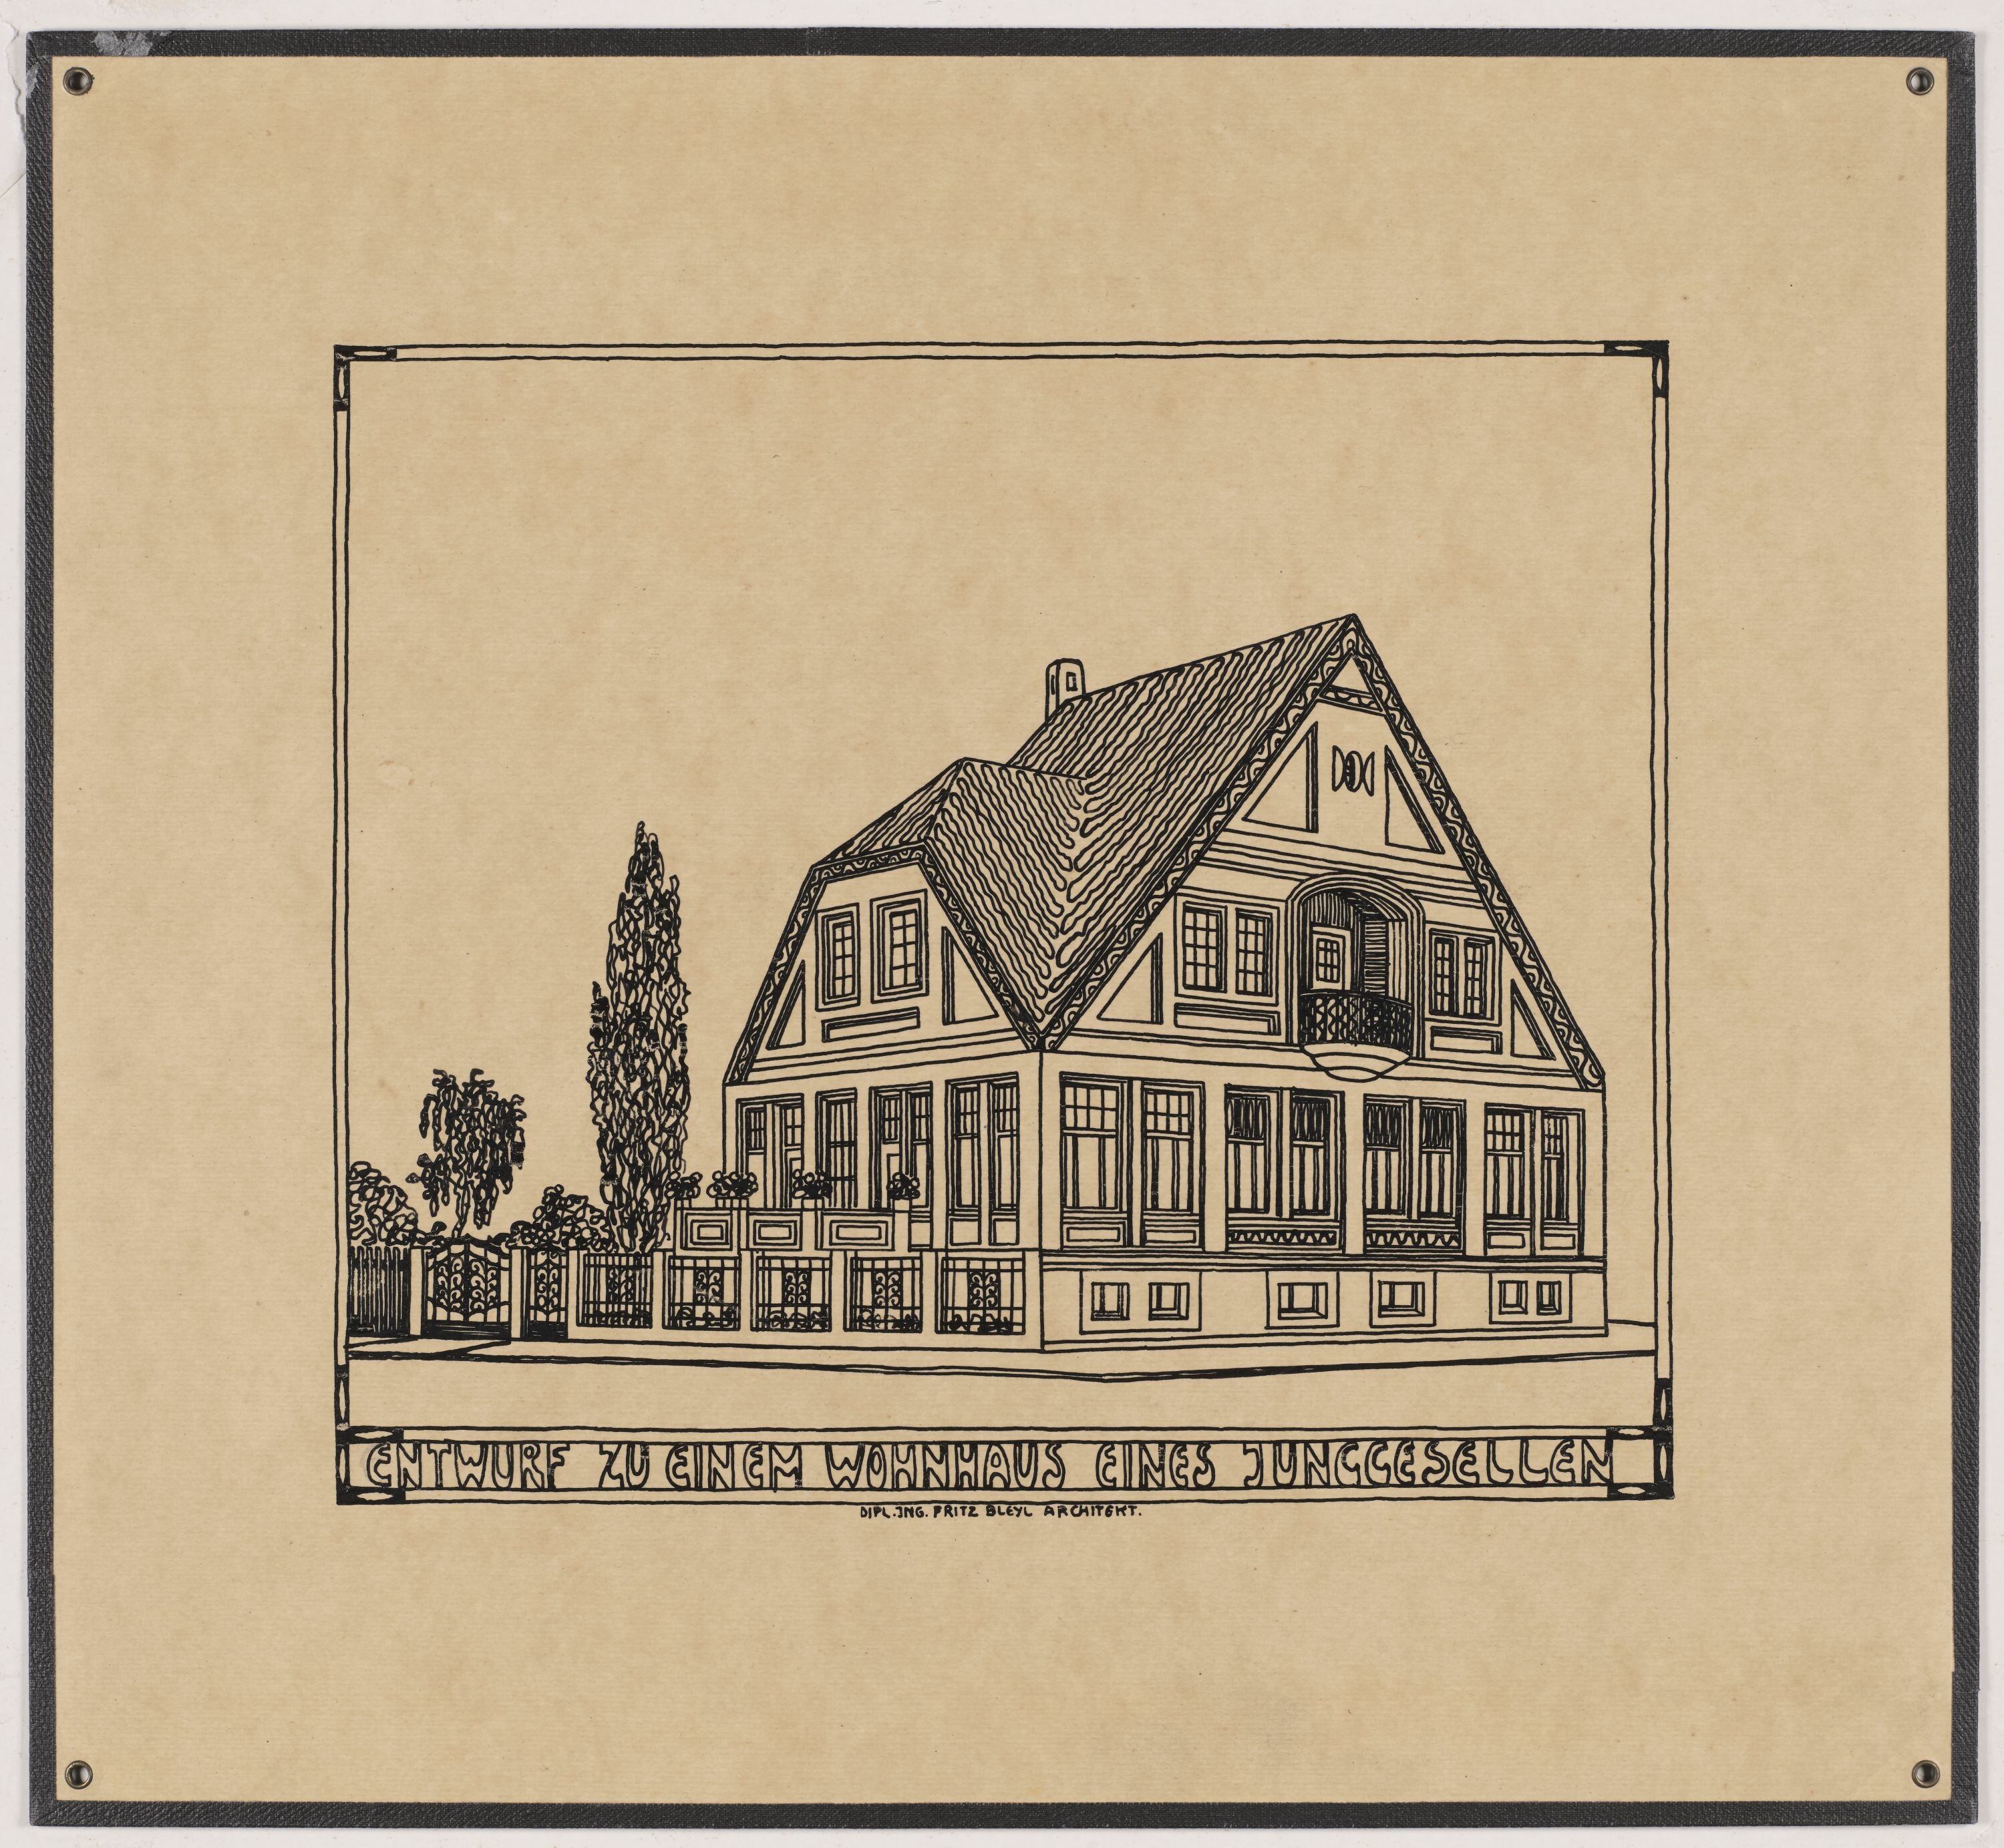 Entwurf zu einem Wohnhaus eines Junggesellen, Eigenhaus für Herrn Paul Wolf, Zwickau (© Bleyl, Berlin/Solingen RR-F)